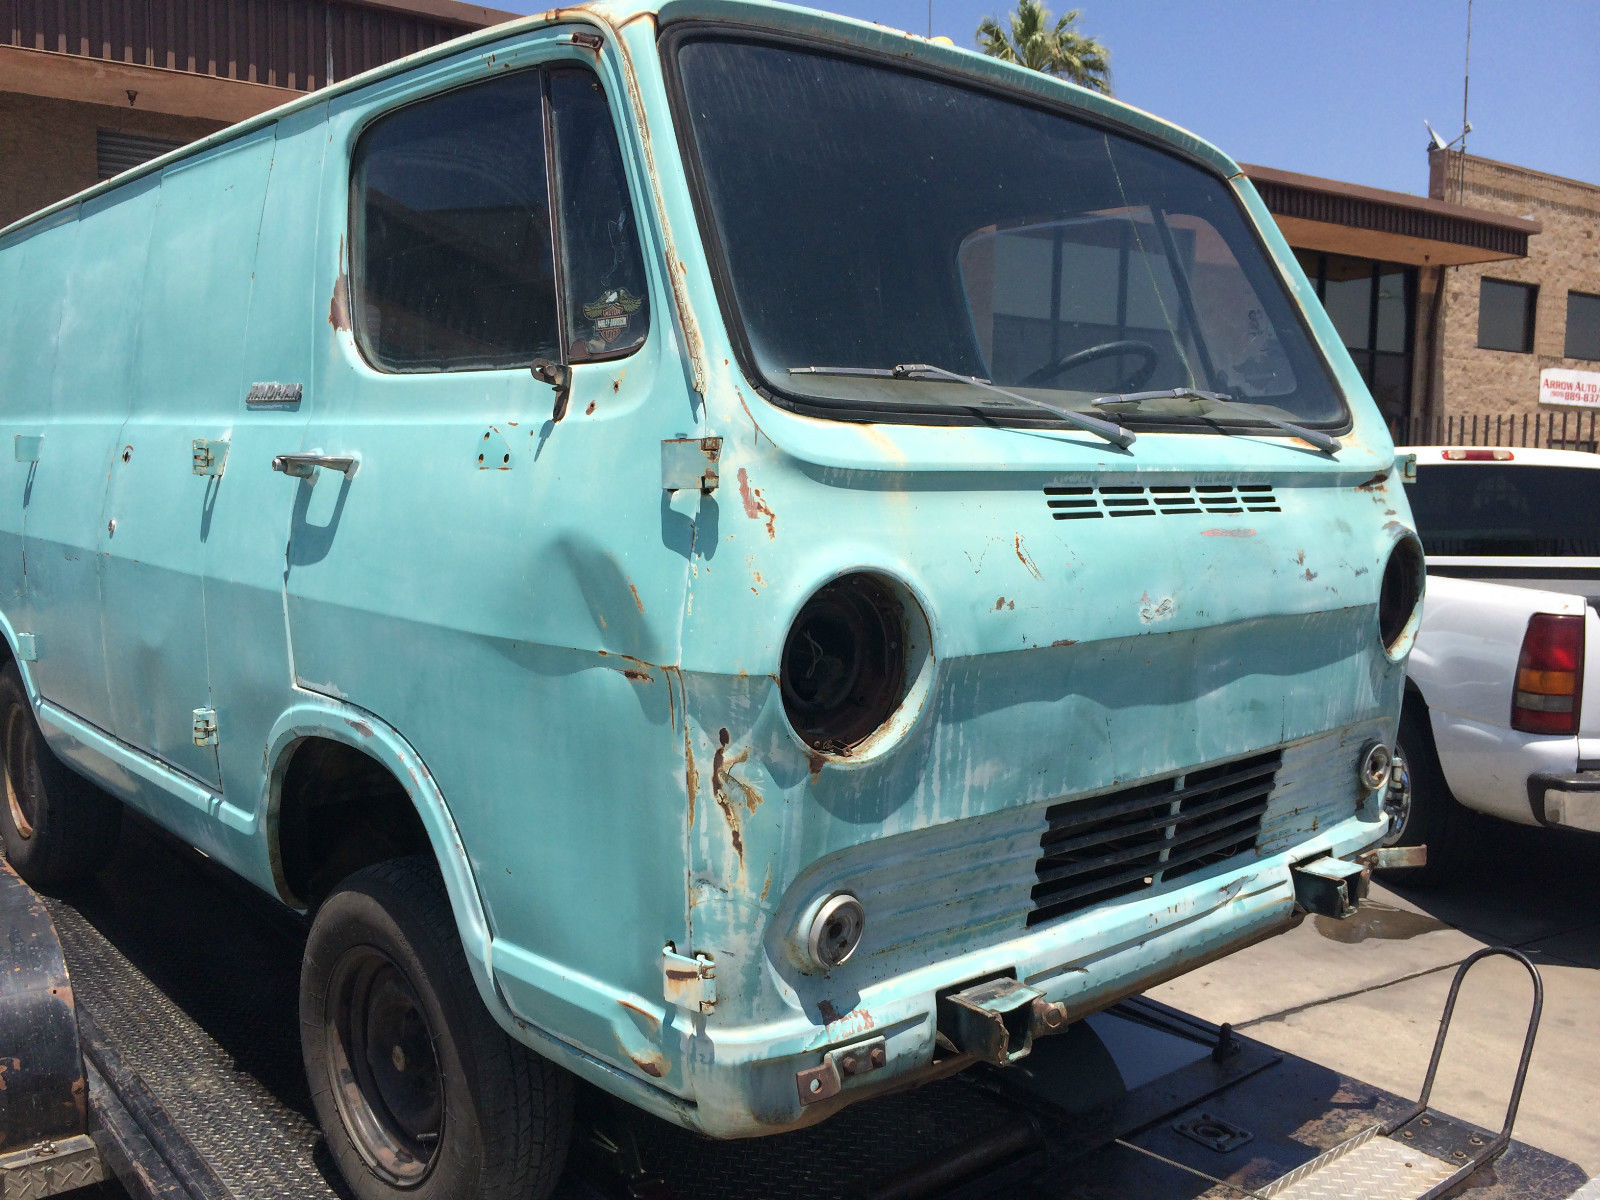 1964 Chevy/GMC panel van California rust free vehicle - Classic ...